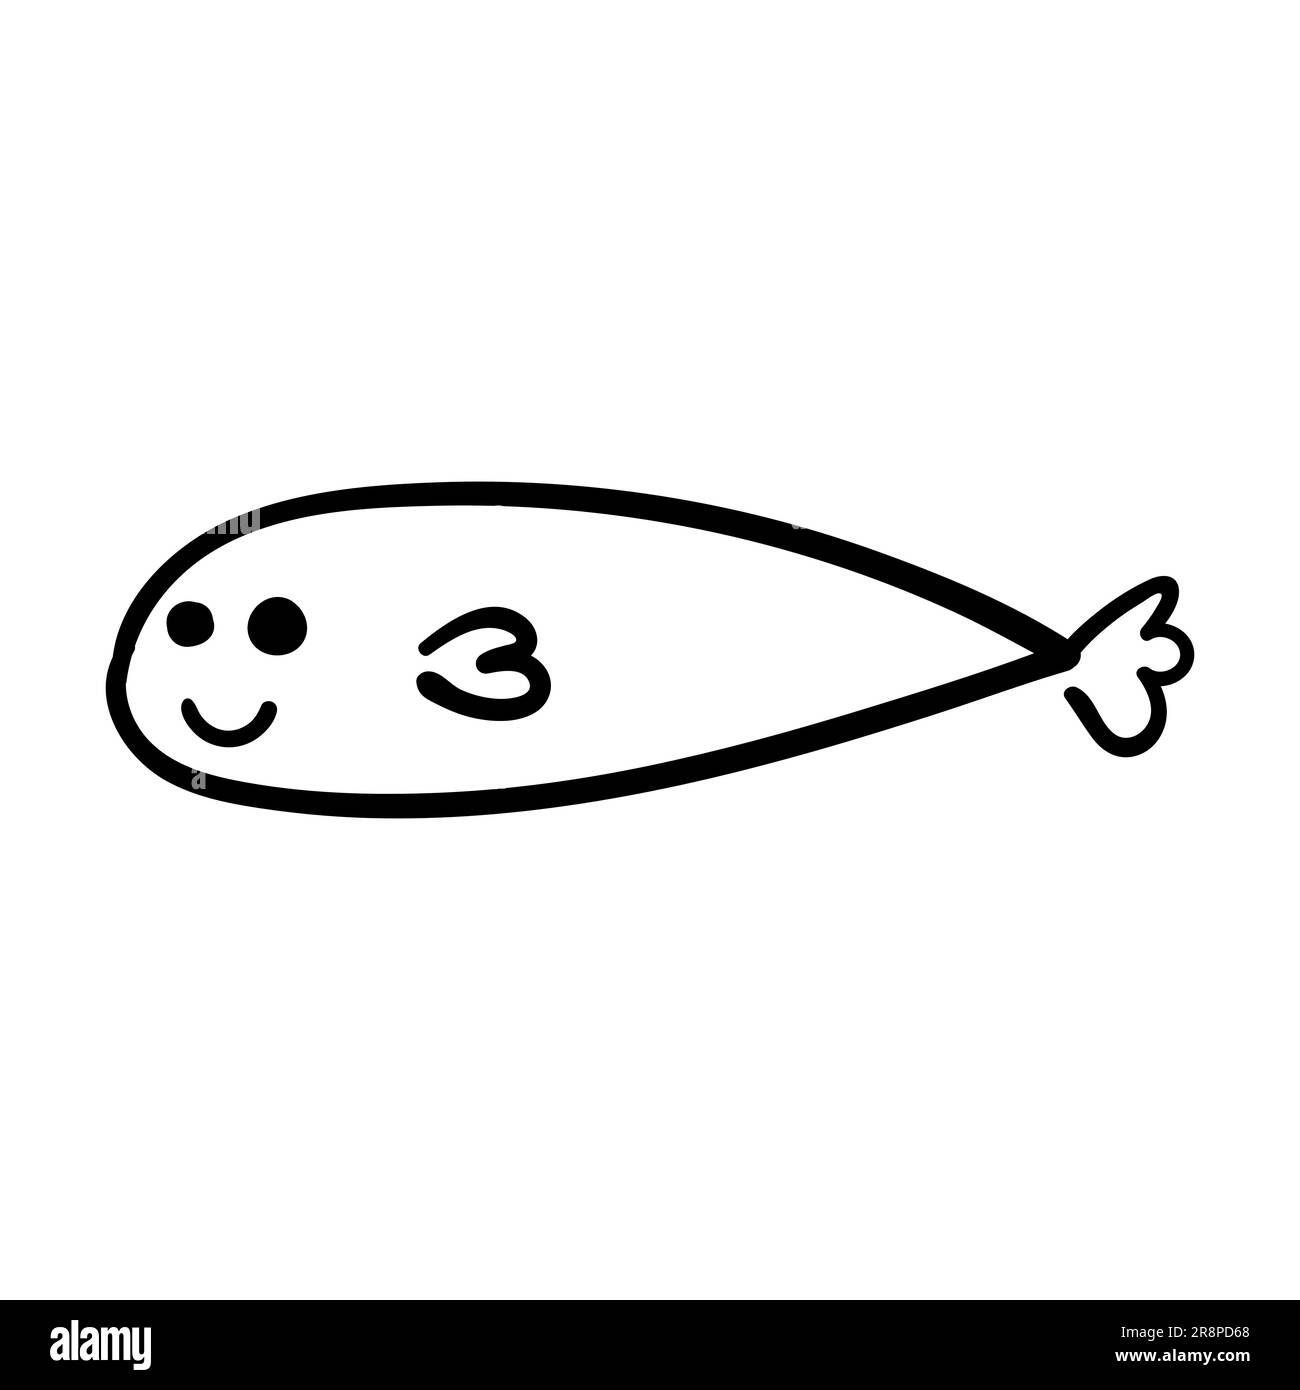 Poisson-doodle dessiné à la main. Animaux sous-marins avec nageoires. Image de dessin animé drôle et puérile. Élément simple avec trait noir épais. Illustration vectorielle isol Illustration de Vecteur